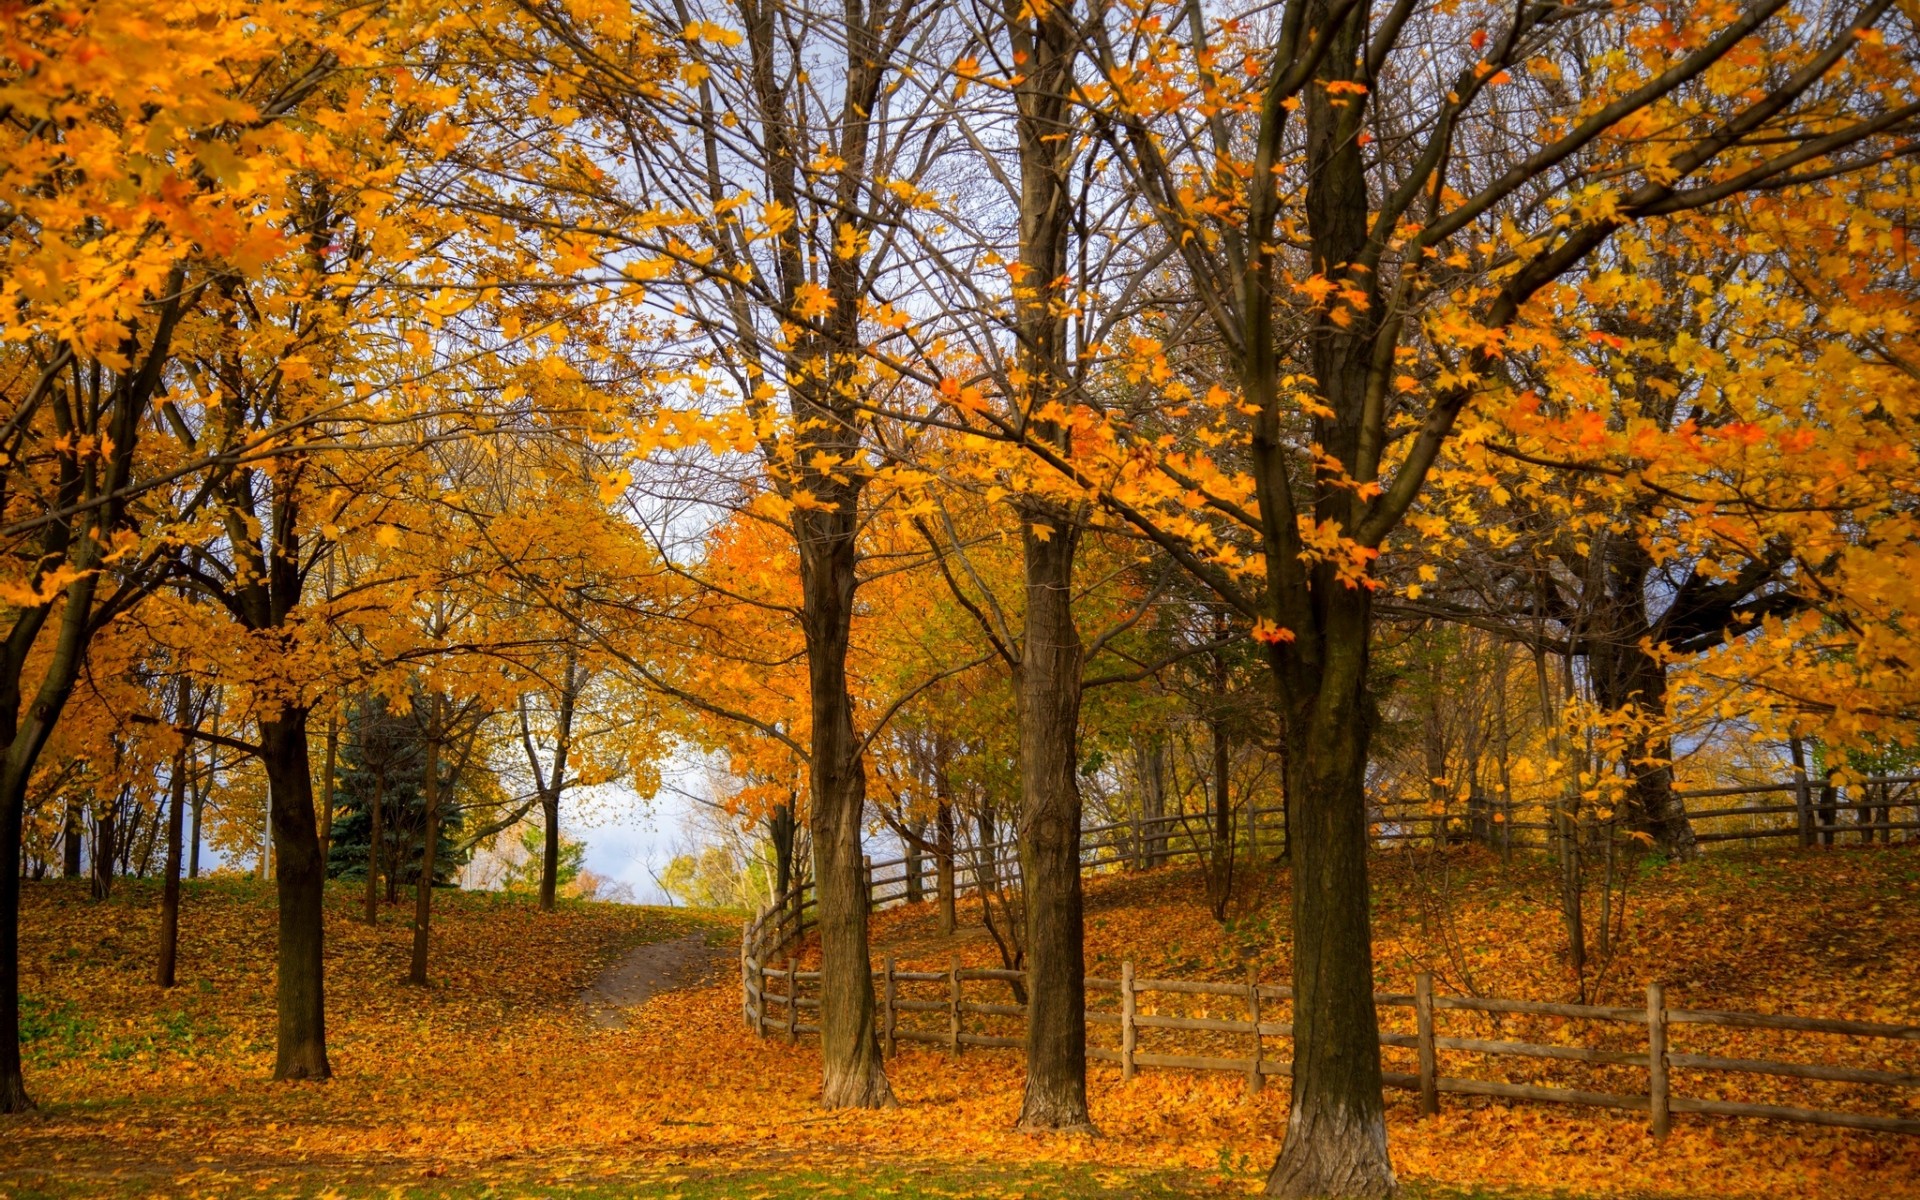 Скачать картинку Осень, Парк, Дерево, Ограда, Фотографии в телефон бесплатно.